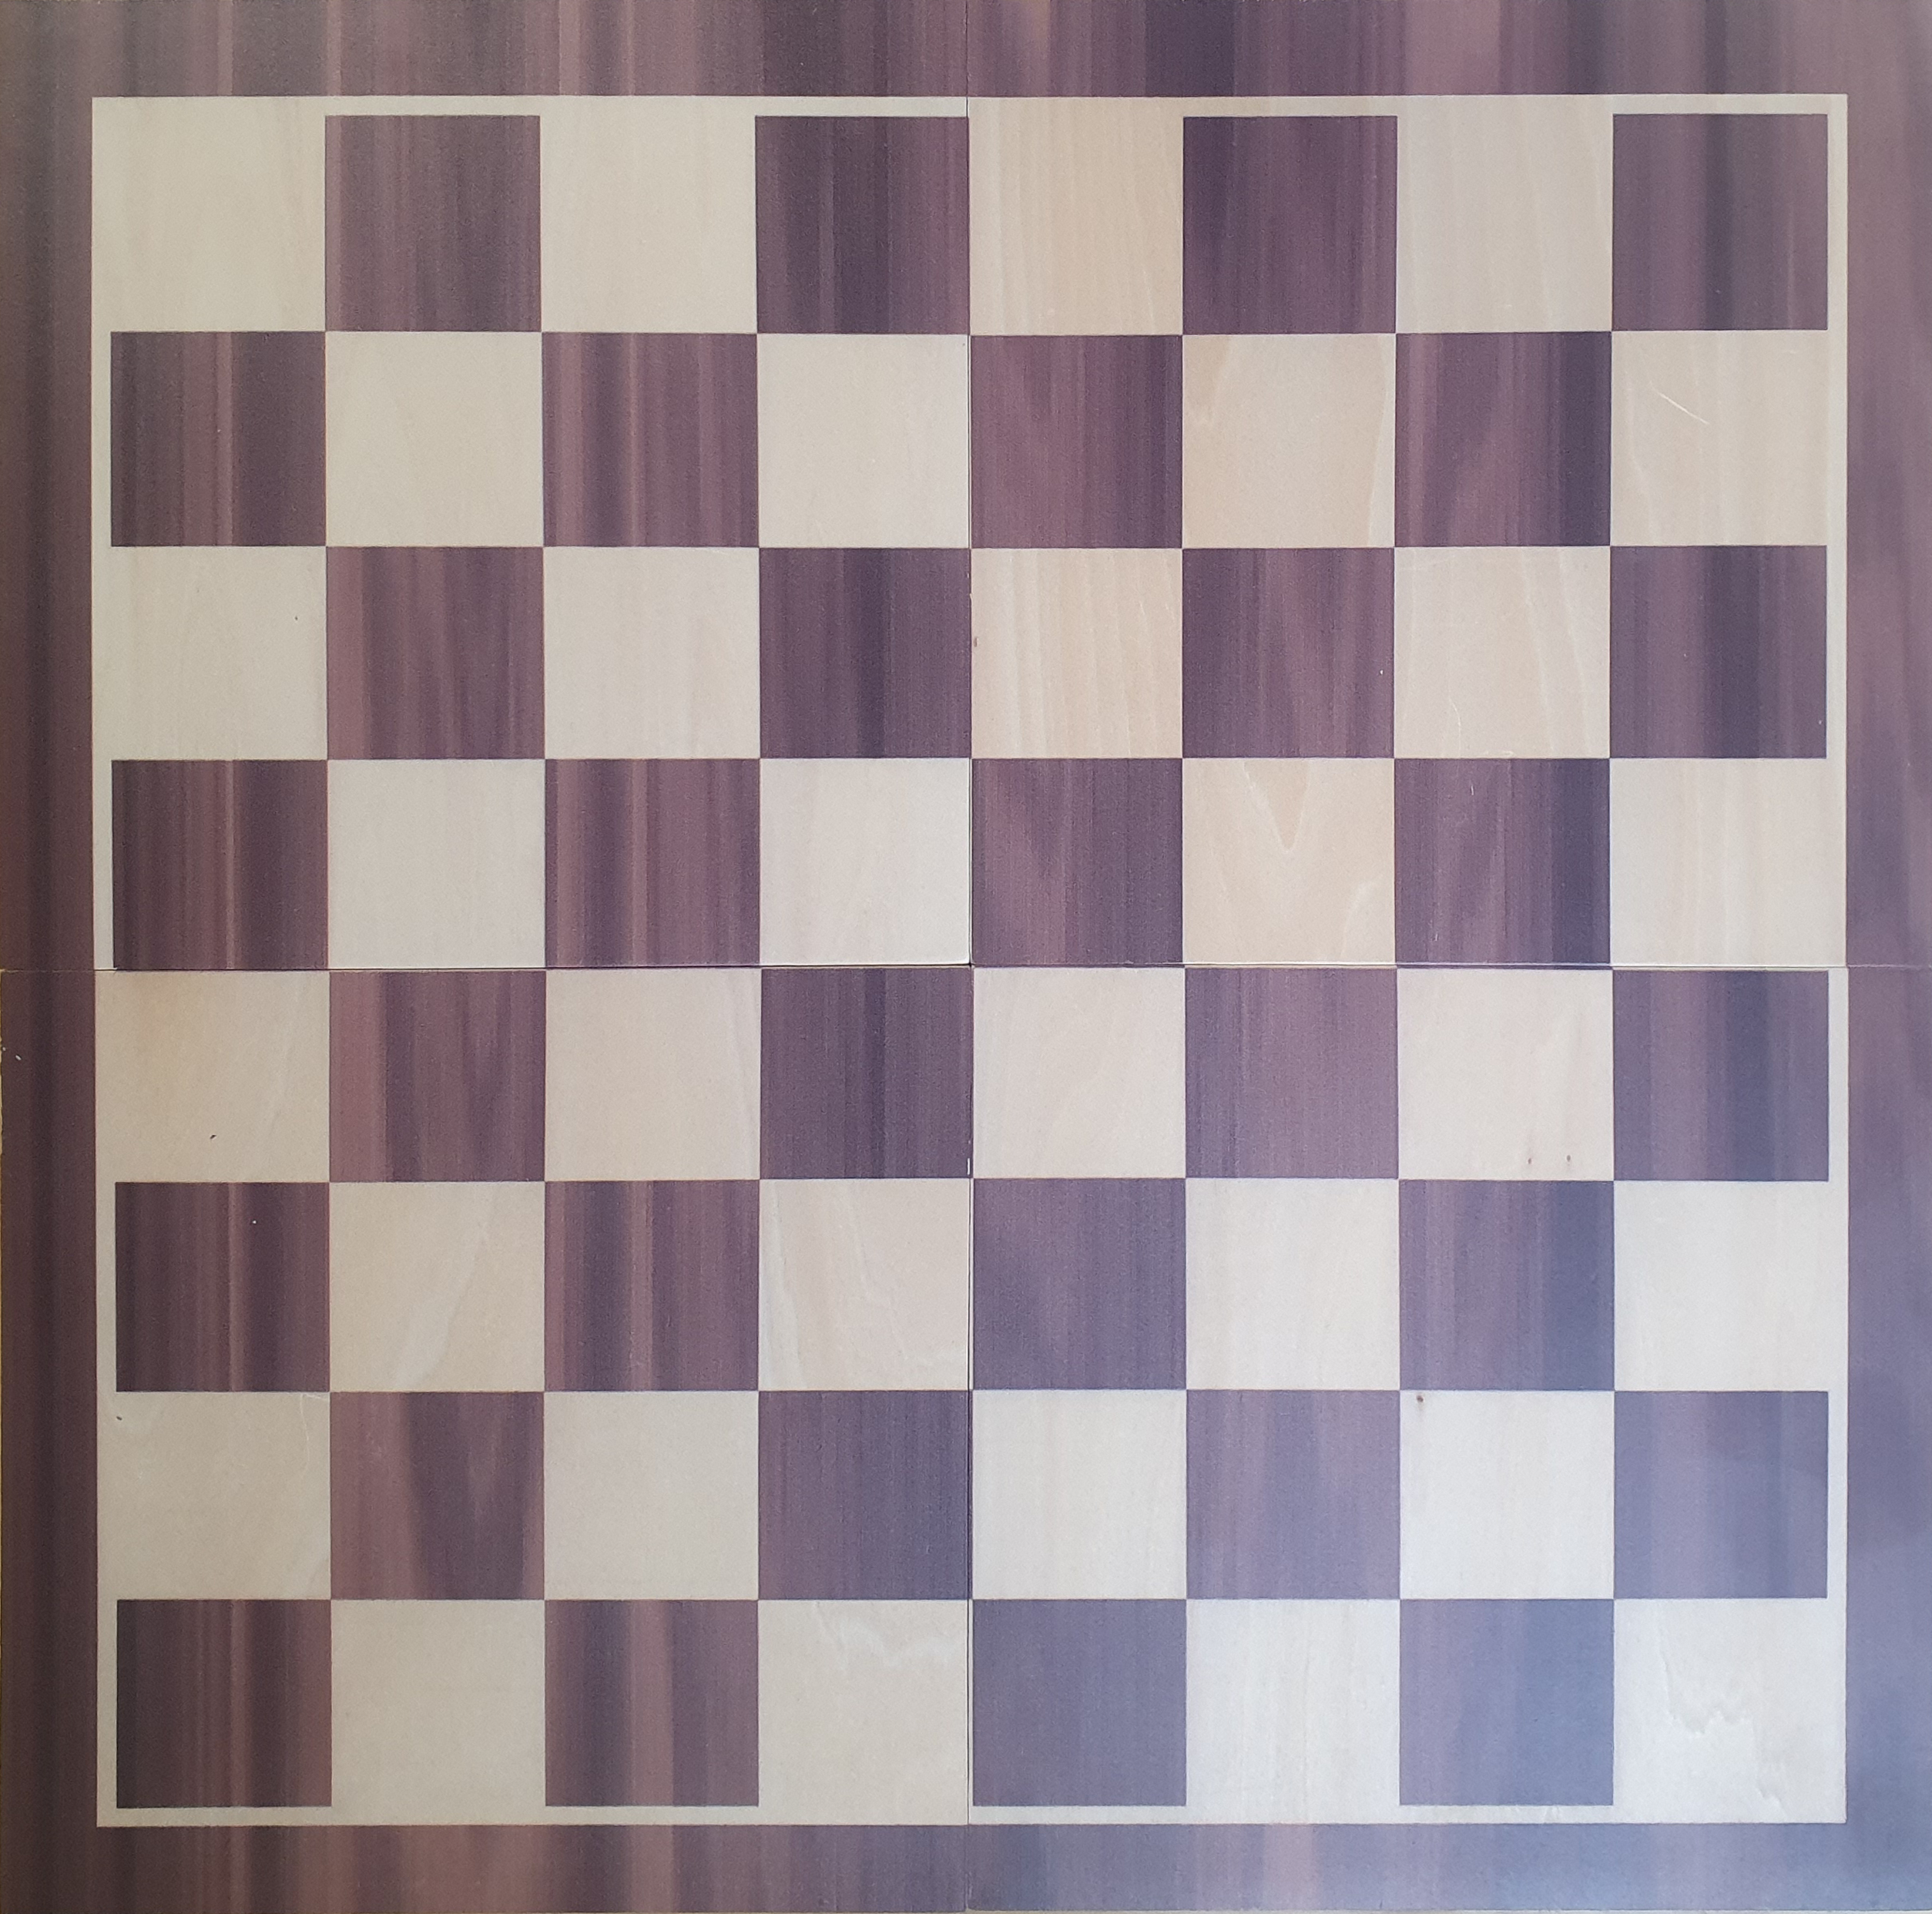 Tablero de madera 4x4 marrón. Escaque 4.5 cm.